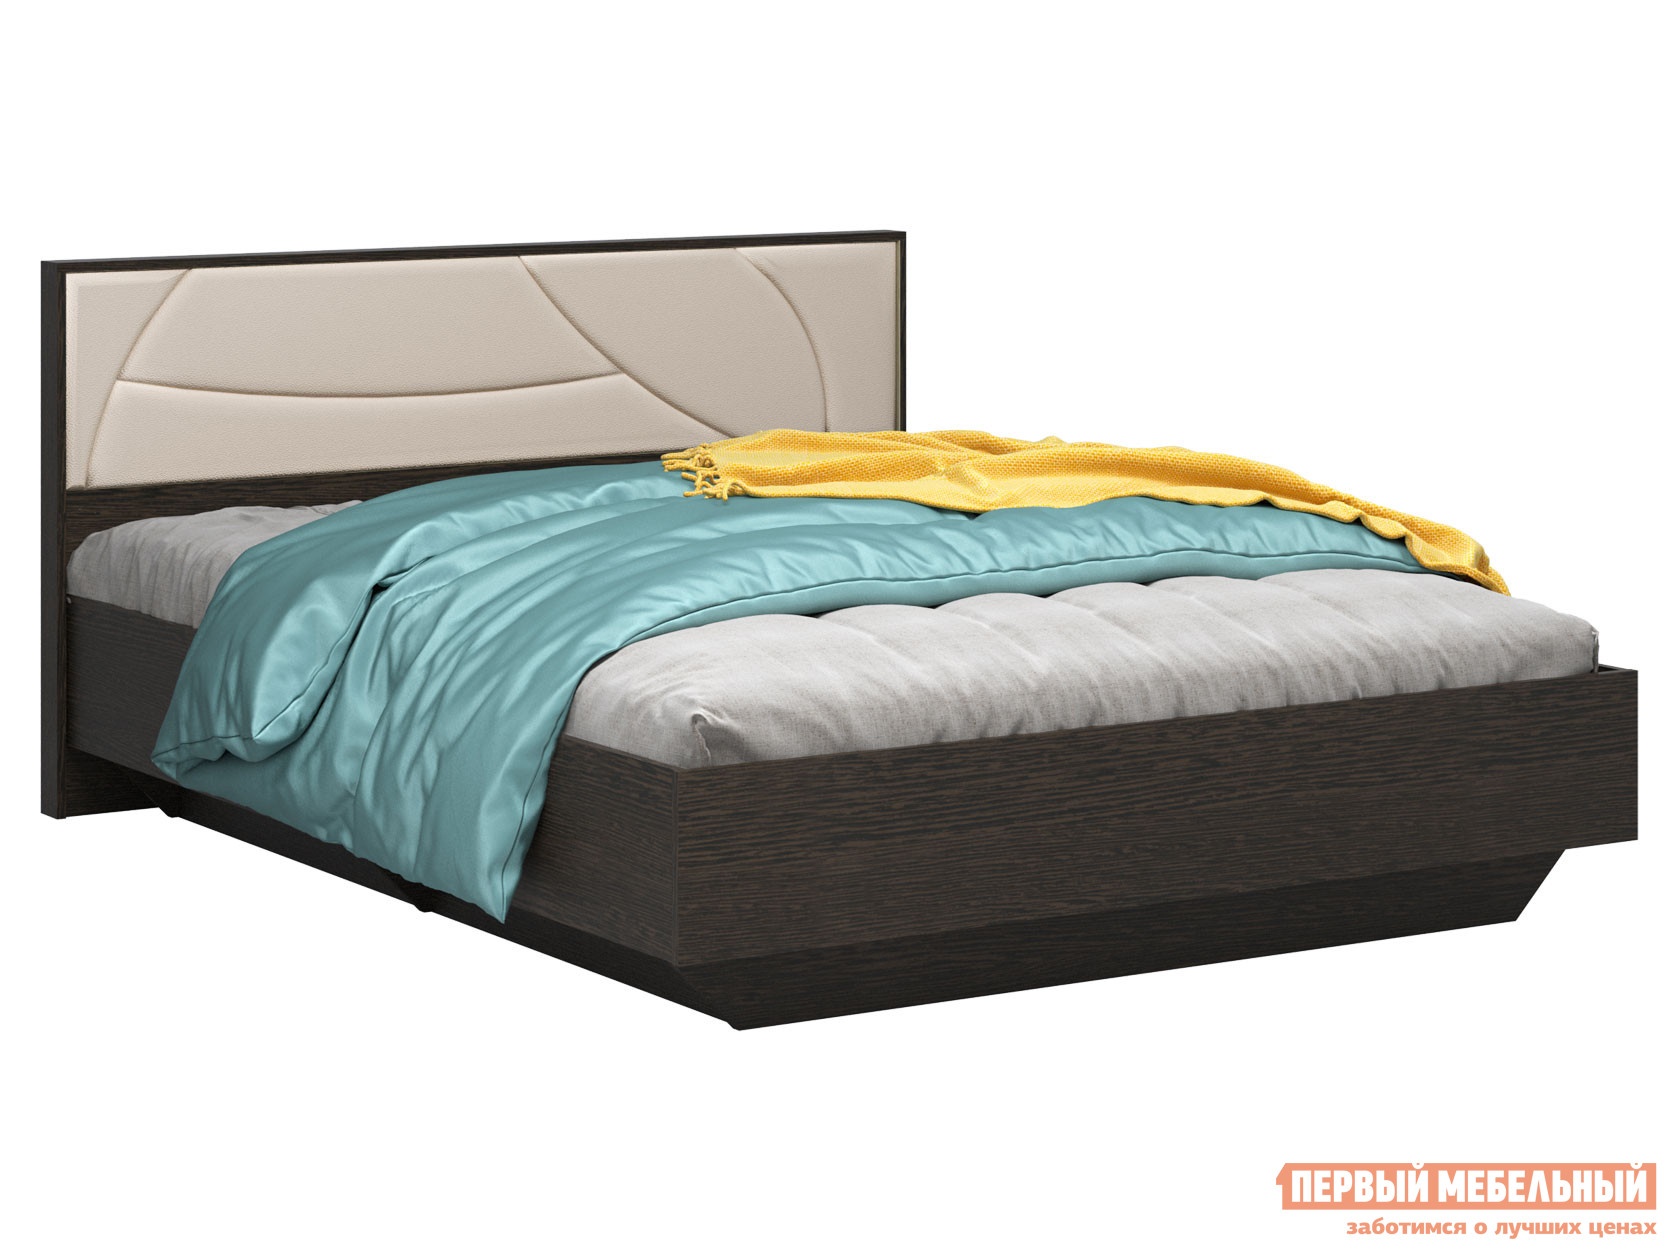 Двуспальная кровать мирти люкс венге ваниль, экокожа, 140х200 см, с анатомическим основанием preview 1